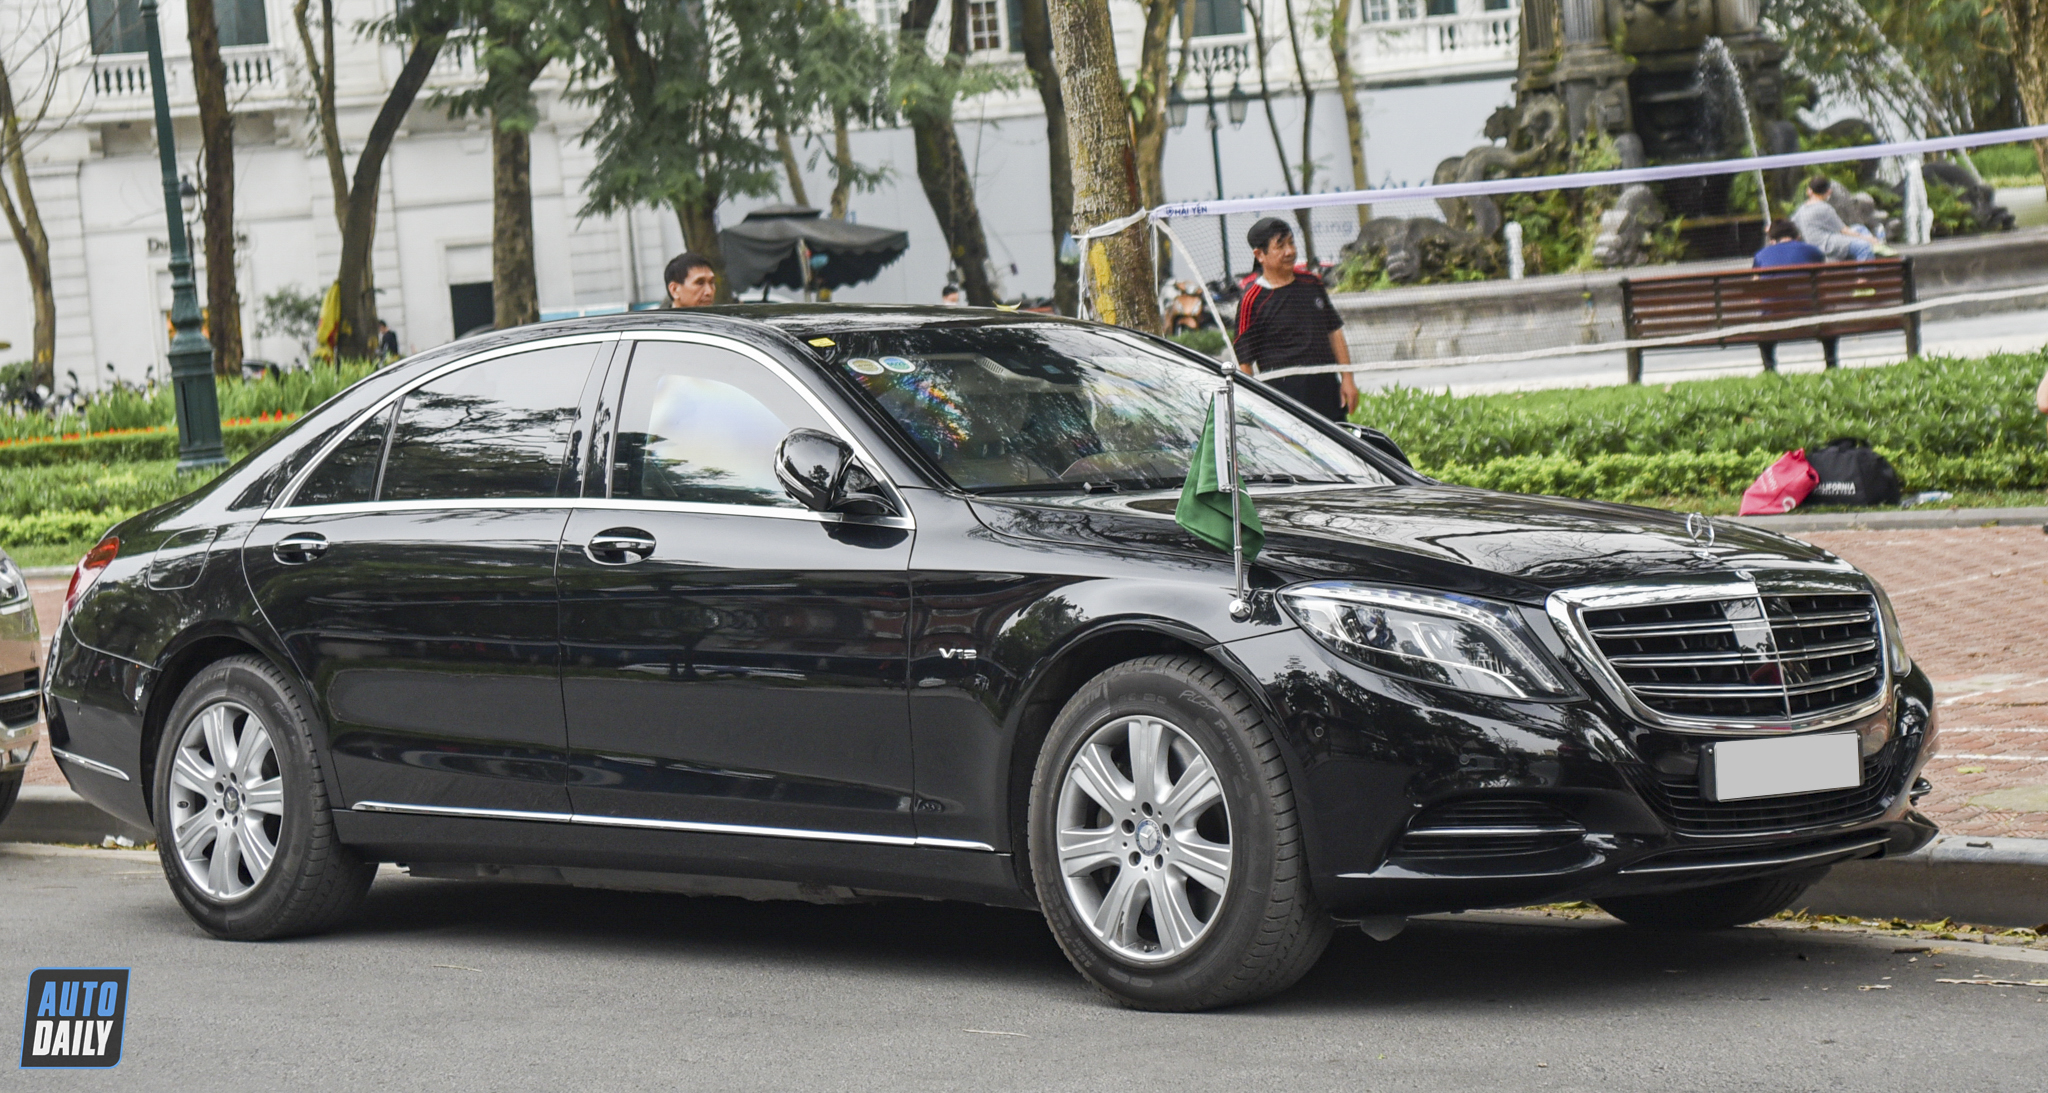 Mercedes-Benz S600 Guard - Sedan hạng sang chống đạn độc nhất Việt Nam